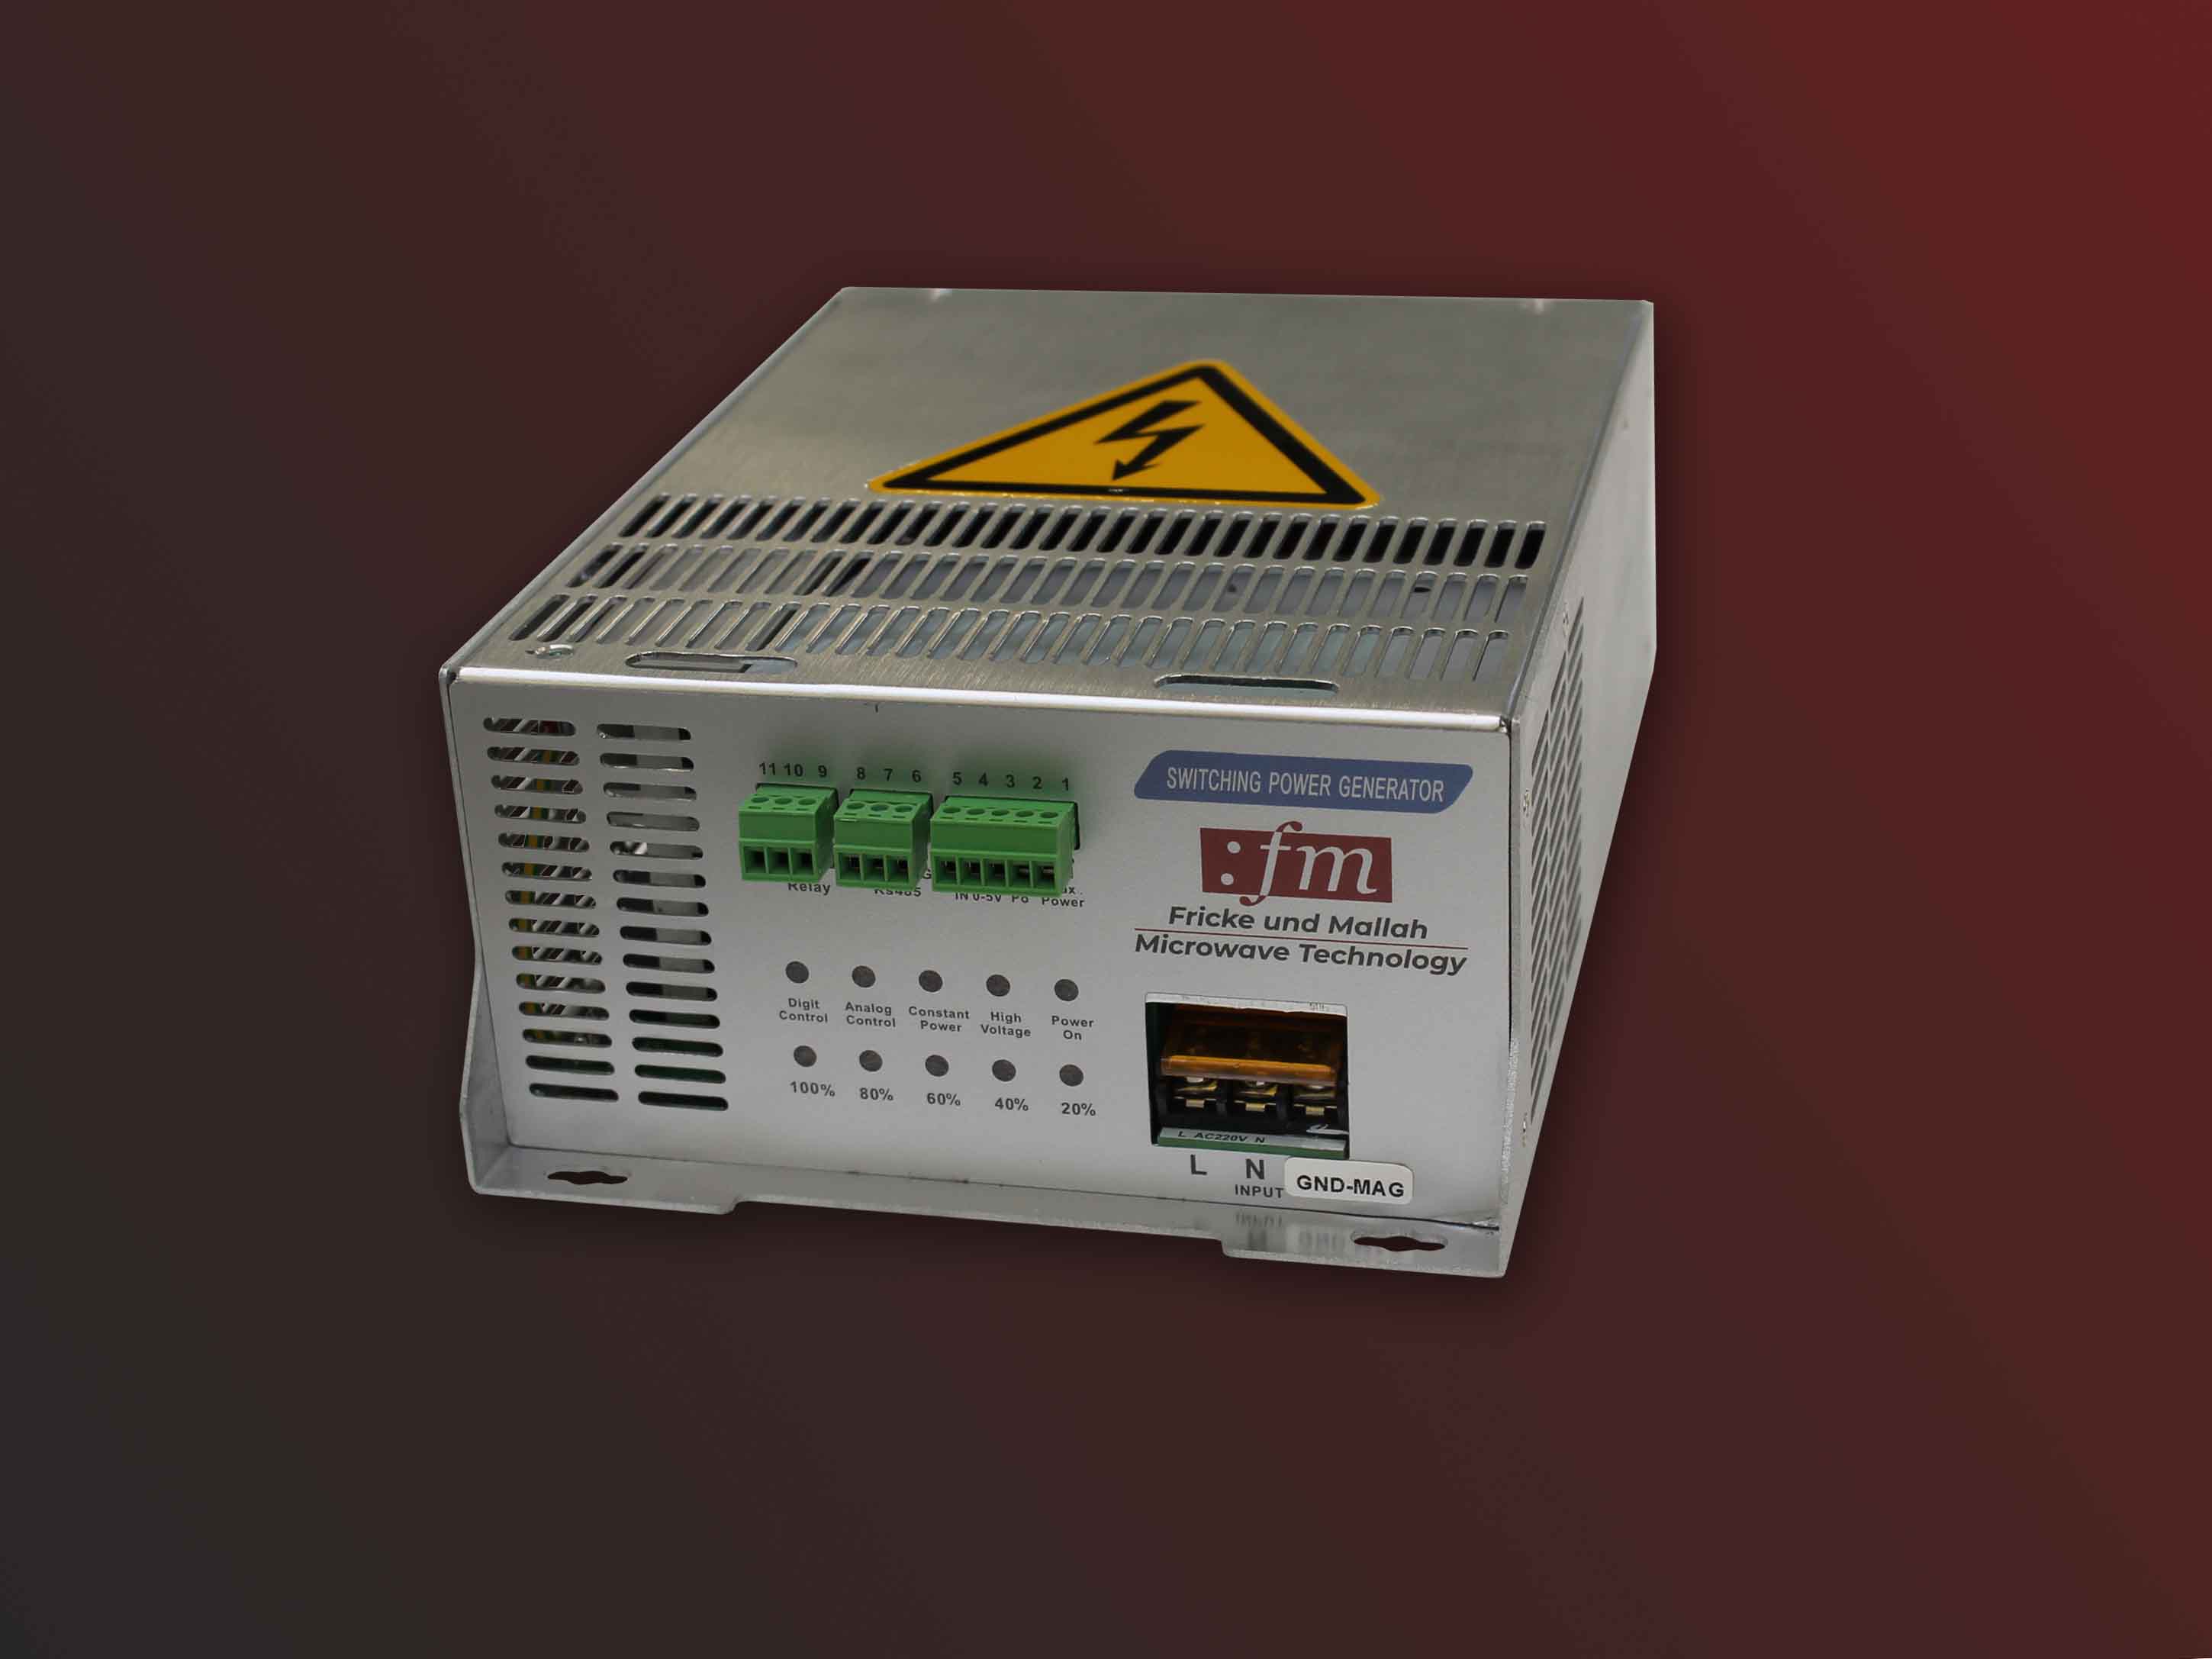 Switch Mode Power Supply 2450 MHz - 1500 W